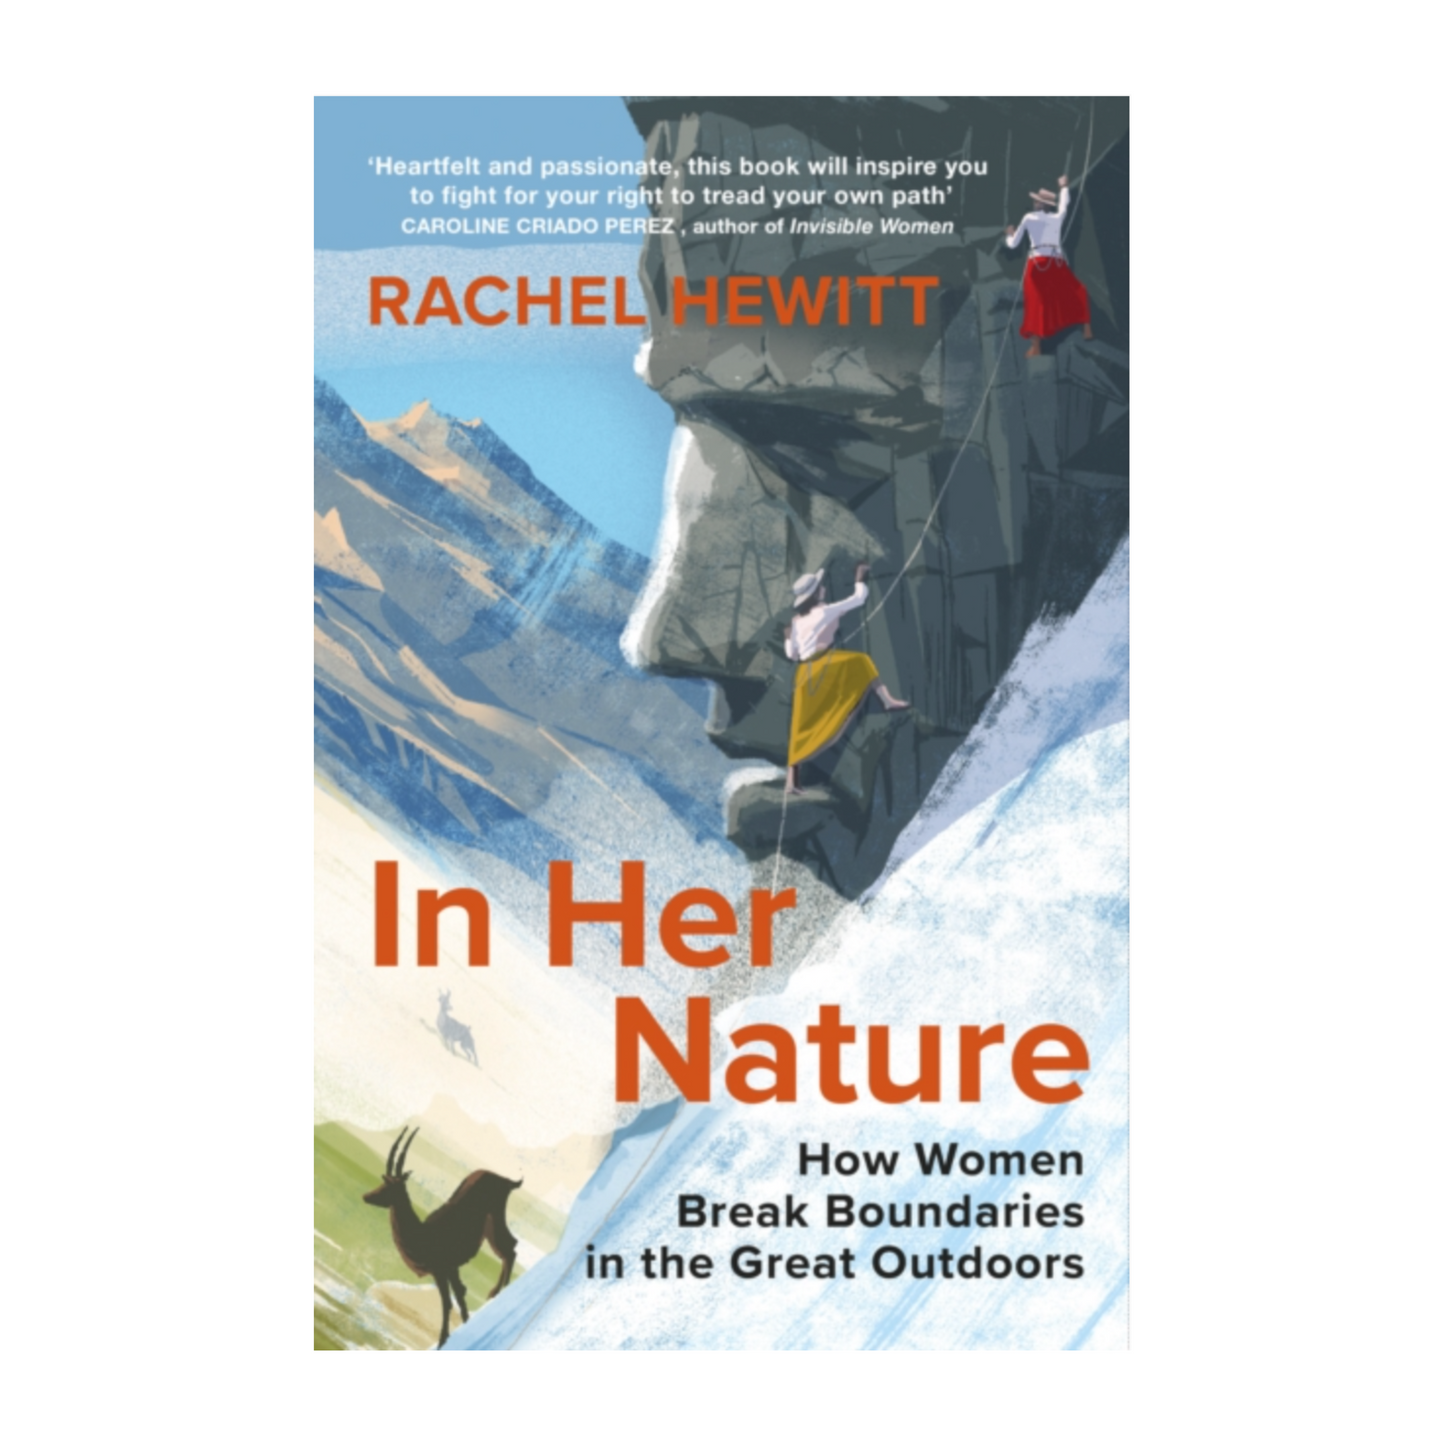 In Her Nature: How Women Break Boundaries in the Great Outdoors - Rachel Hewitt